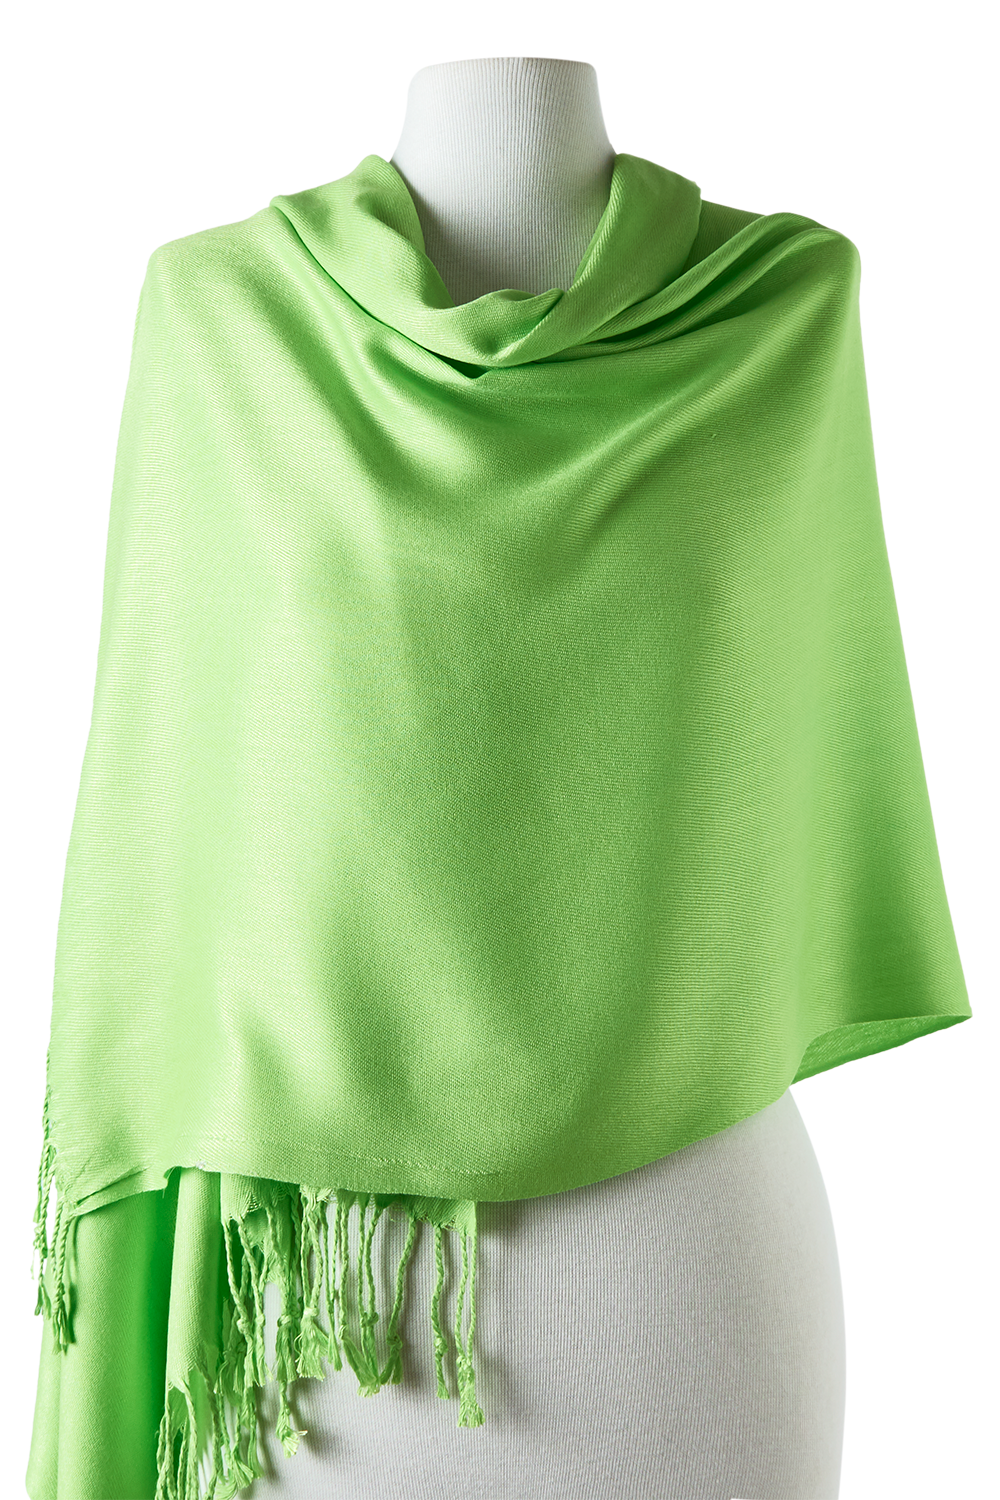 pashmina cachecol de viscose verde claro 70x180cm para festas, eventos, frio e inverno